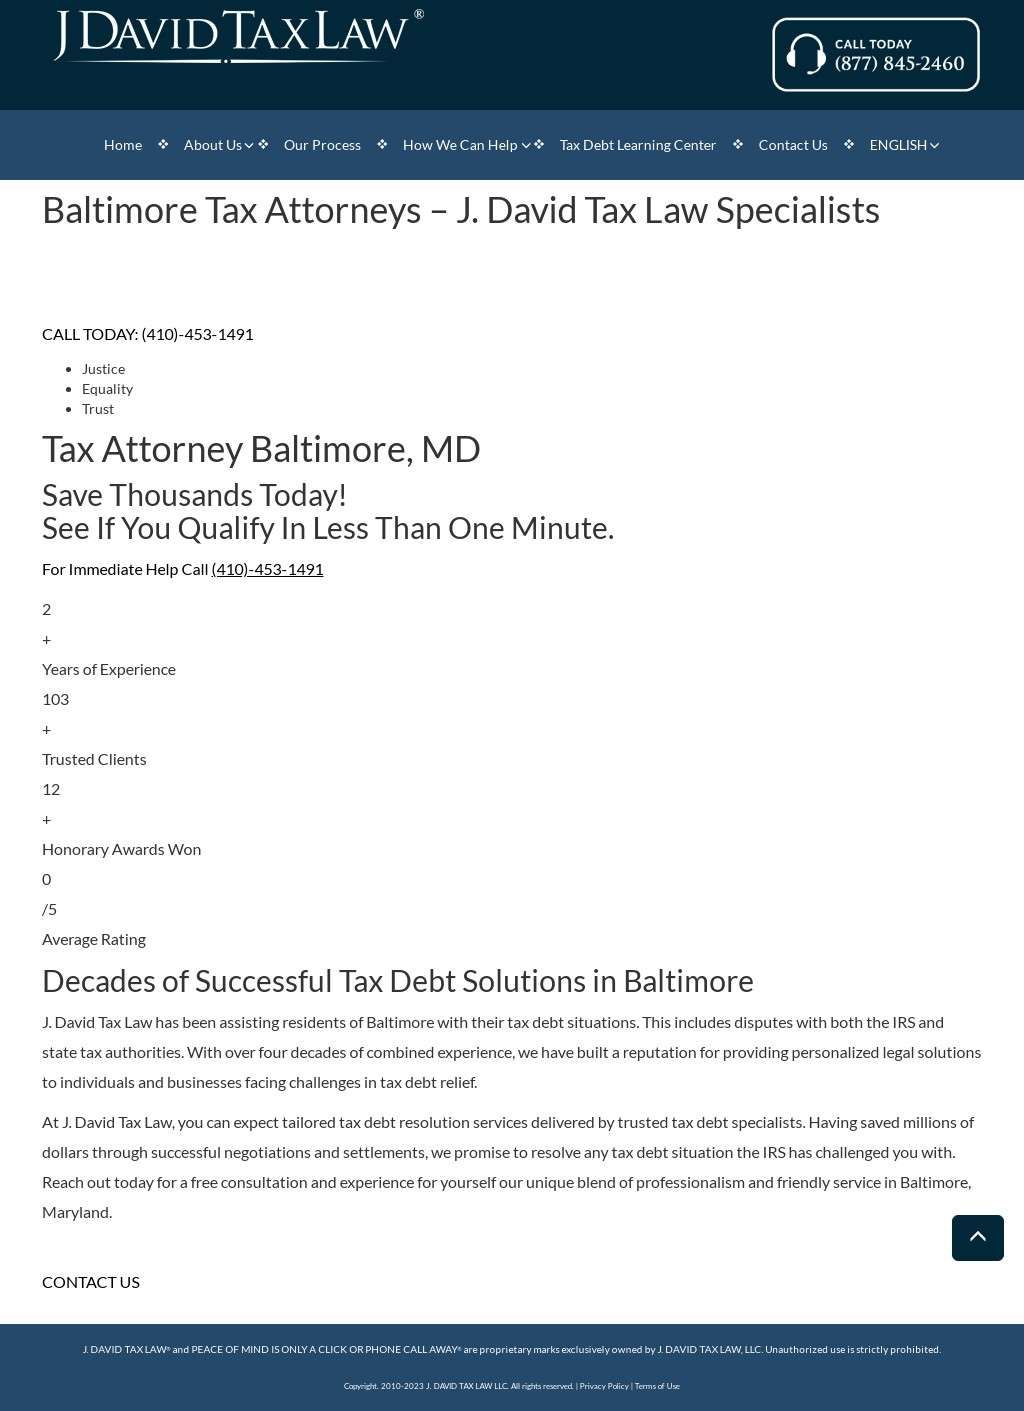 Tax Debt Attorney: J. David Tax Law Baltimore MD